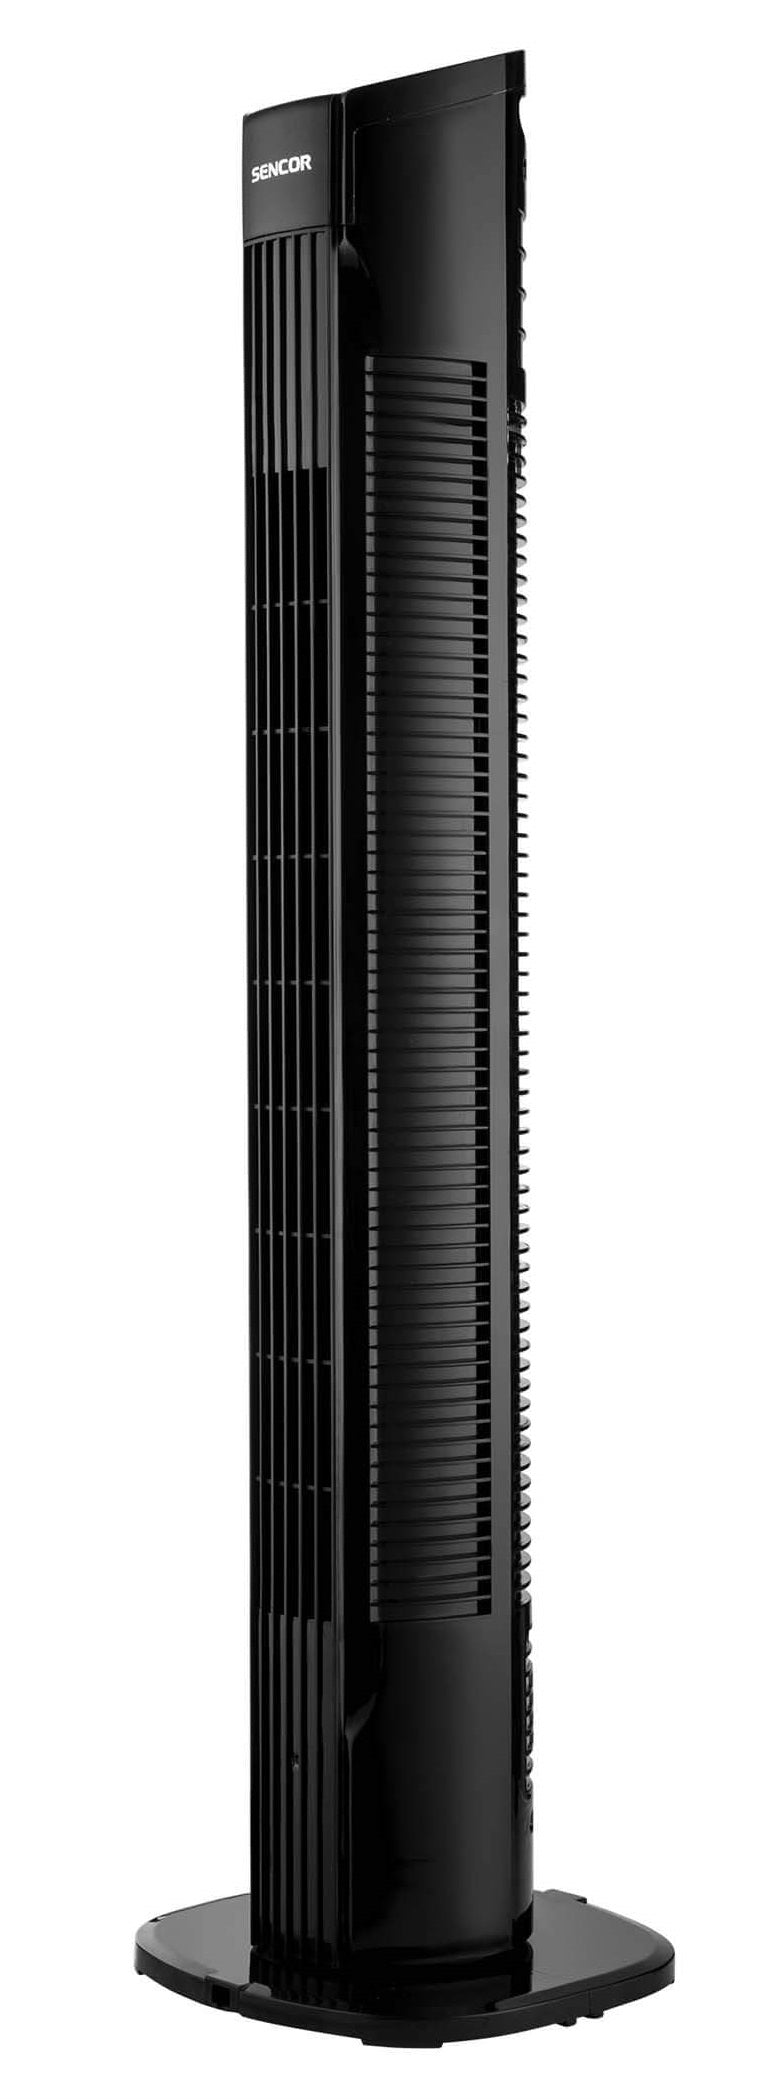 Sencor Tower Fan SFT 3113BK